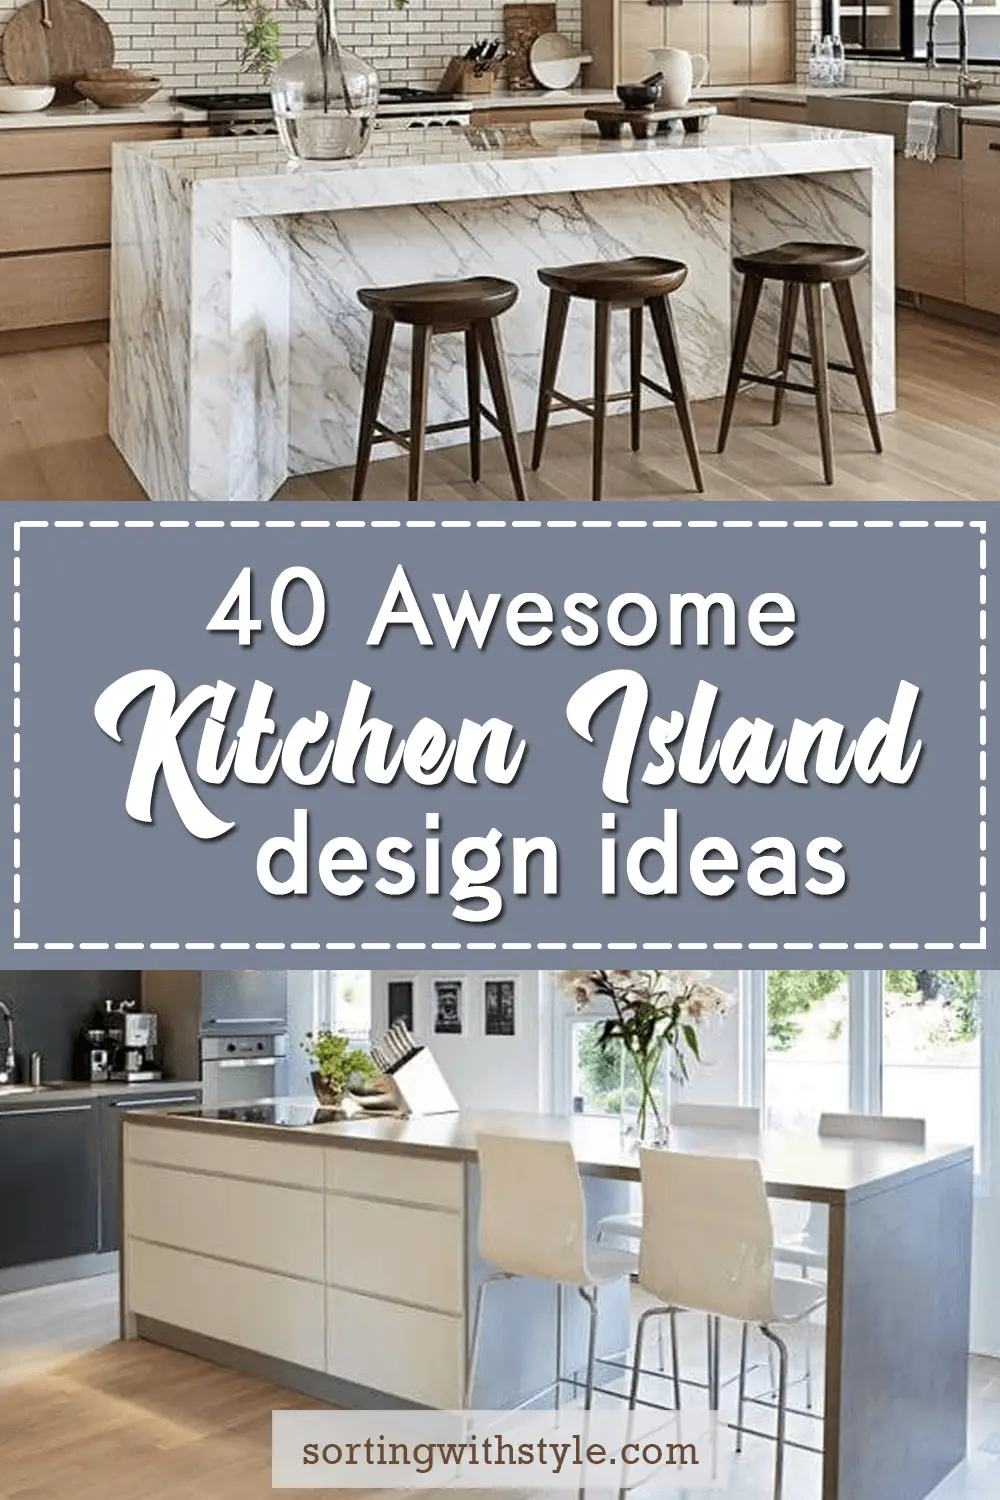 40 Awesome Kitchen Island Design Ideas, Kitchen Island Cabinet Design Ideas